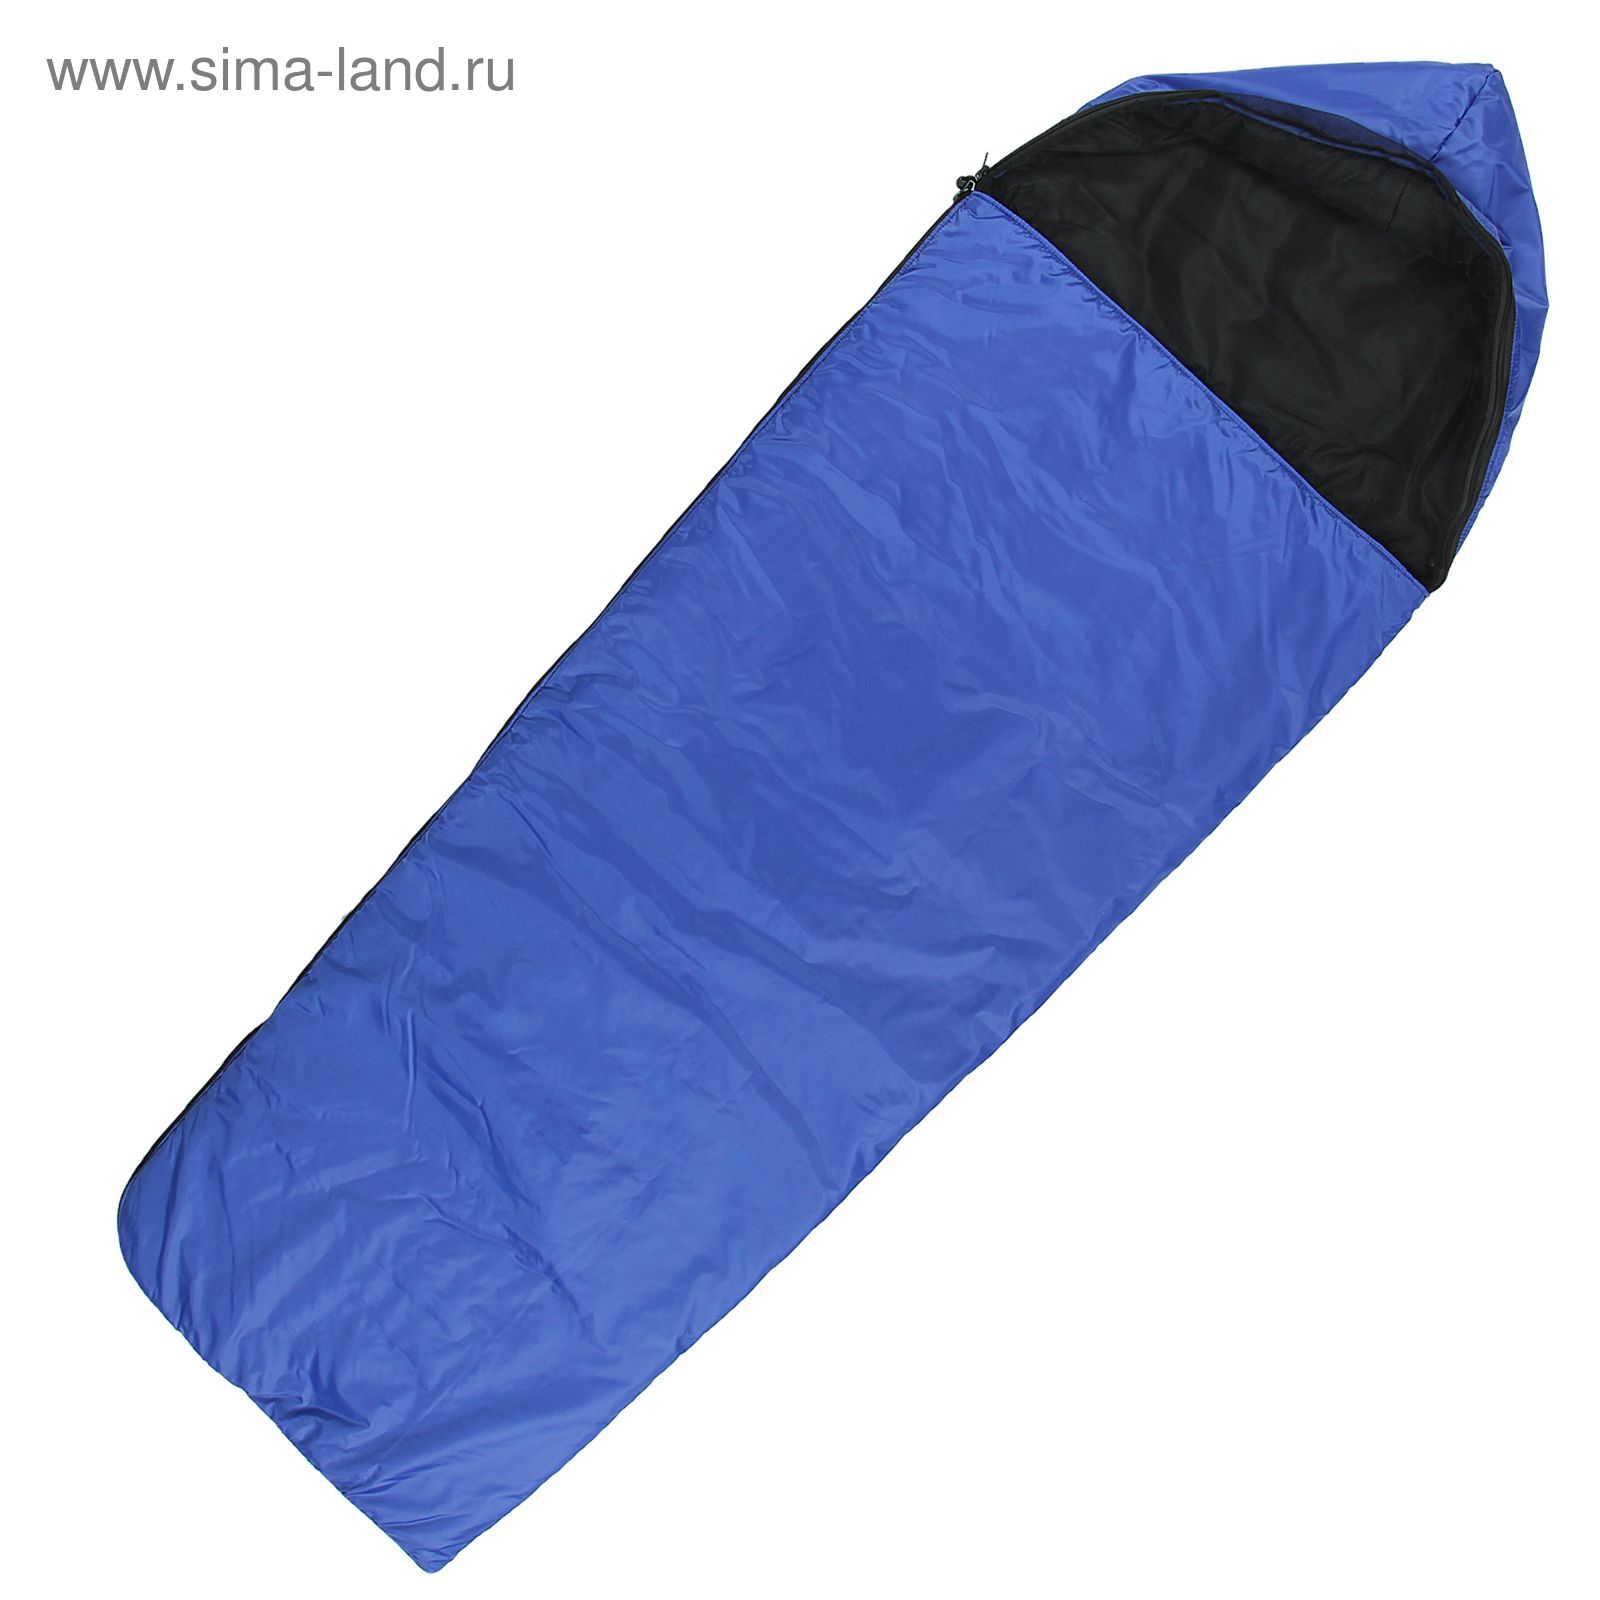 Спальный мешок "Люкс", с москитной сеткой, 2-х слойный, размер 225 х 70 см